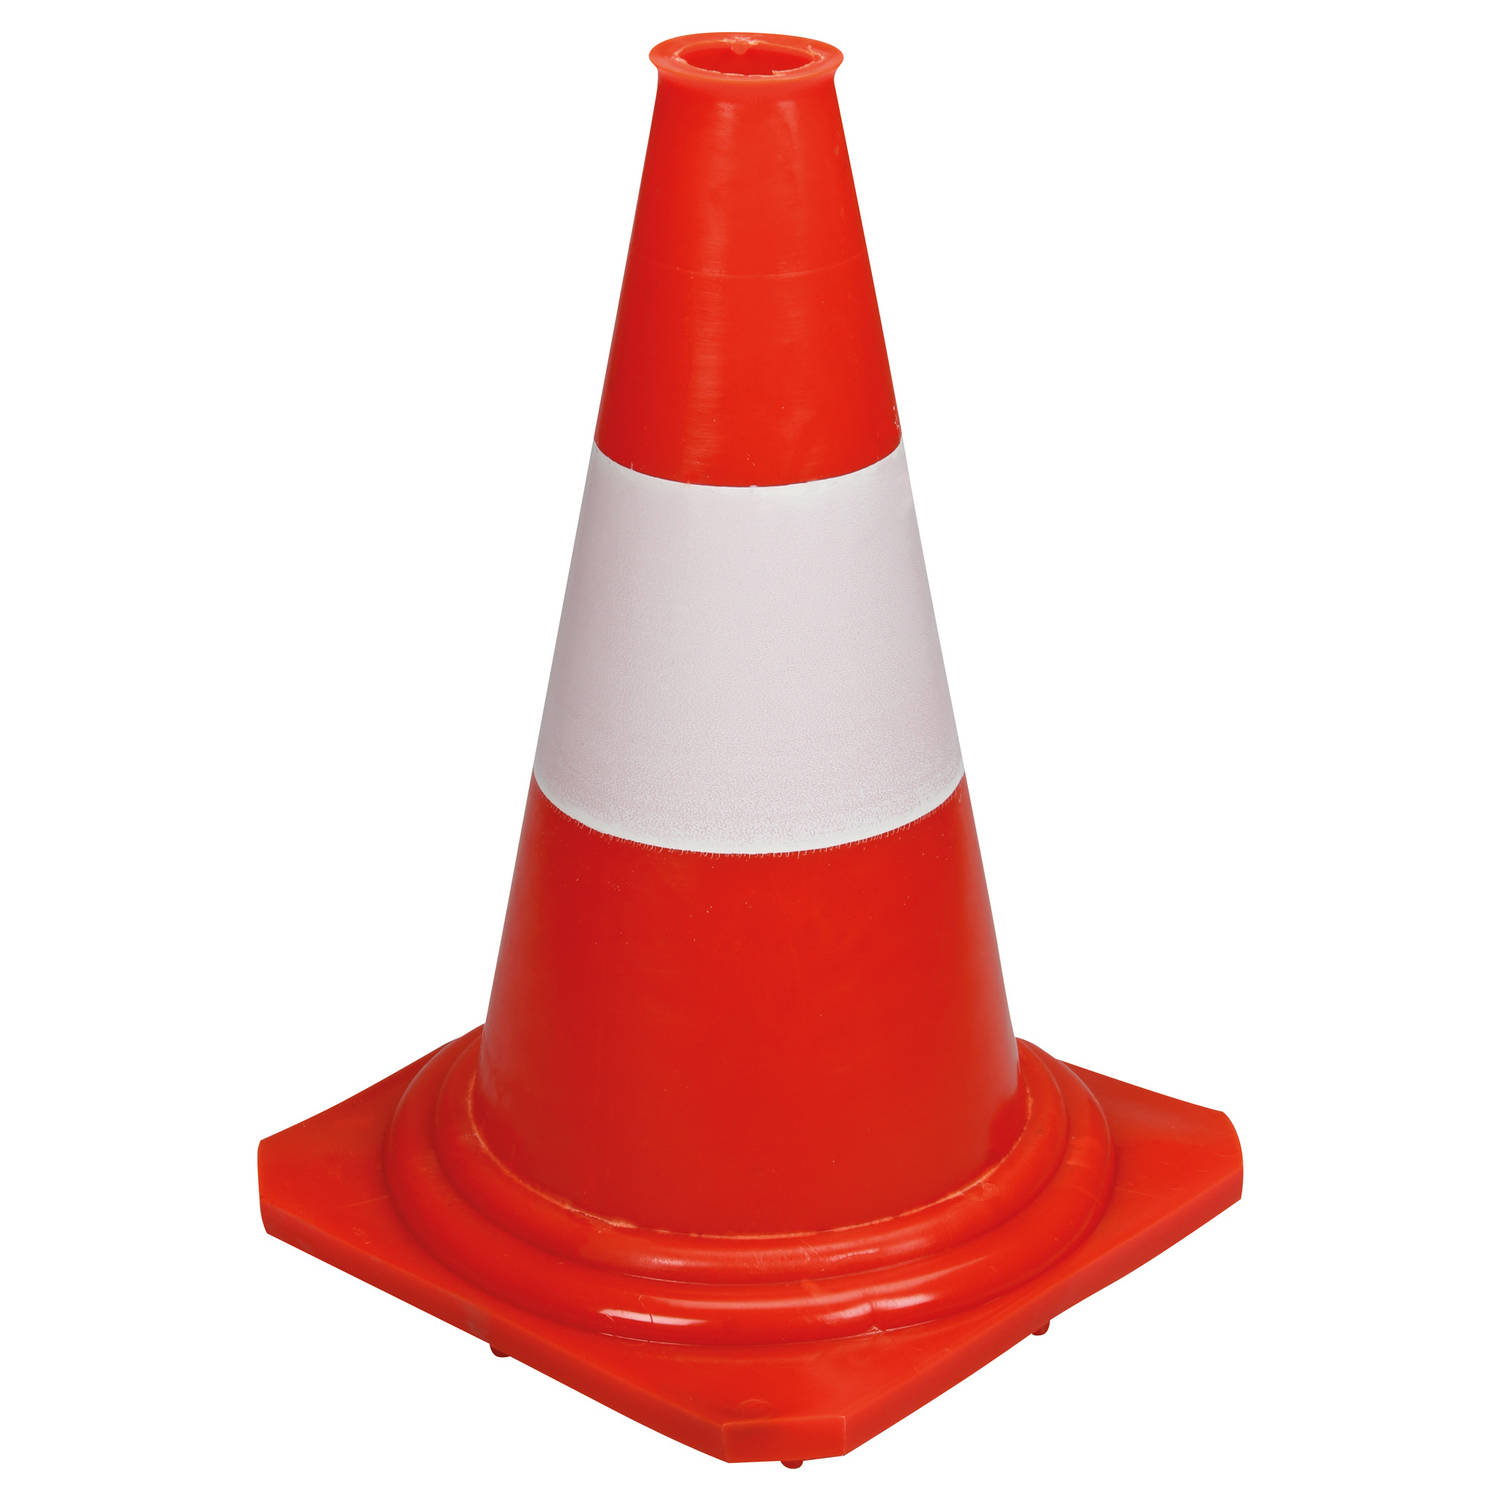 Oranje witte pilon (pion) voor signalering of afzettingen en sportdoeleinden 50cm